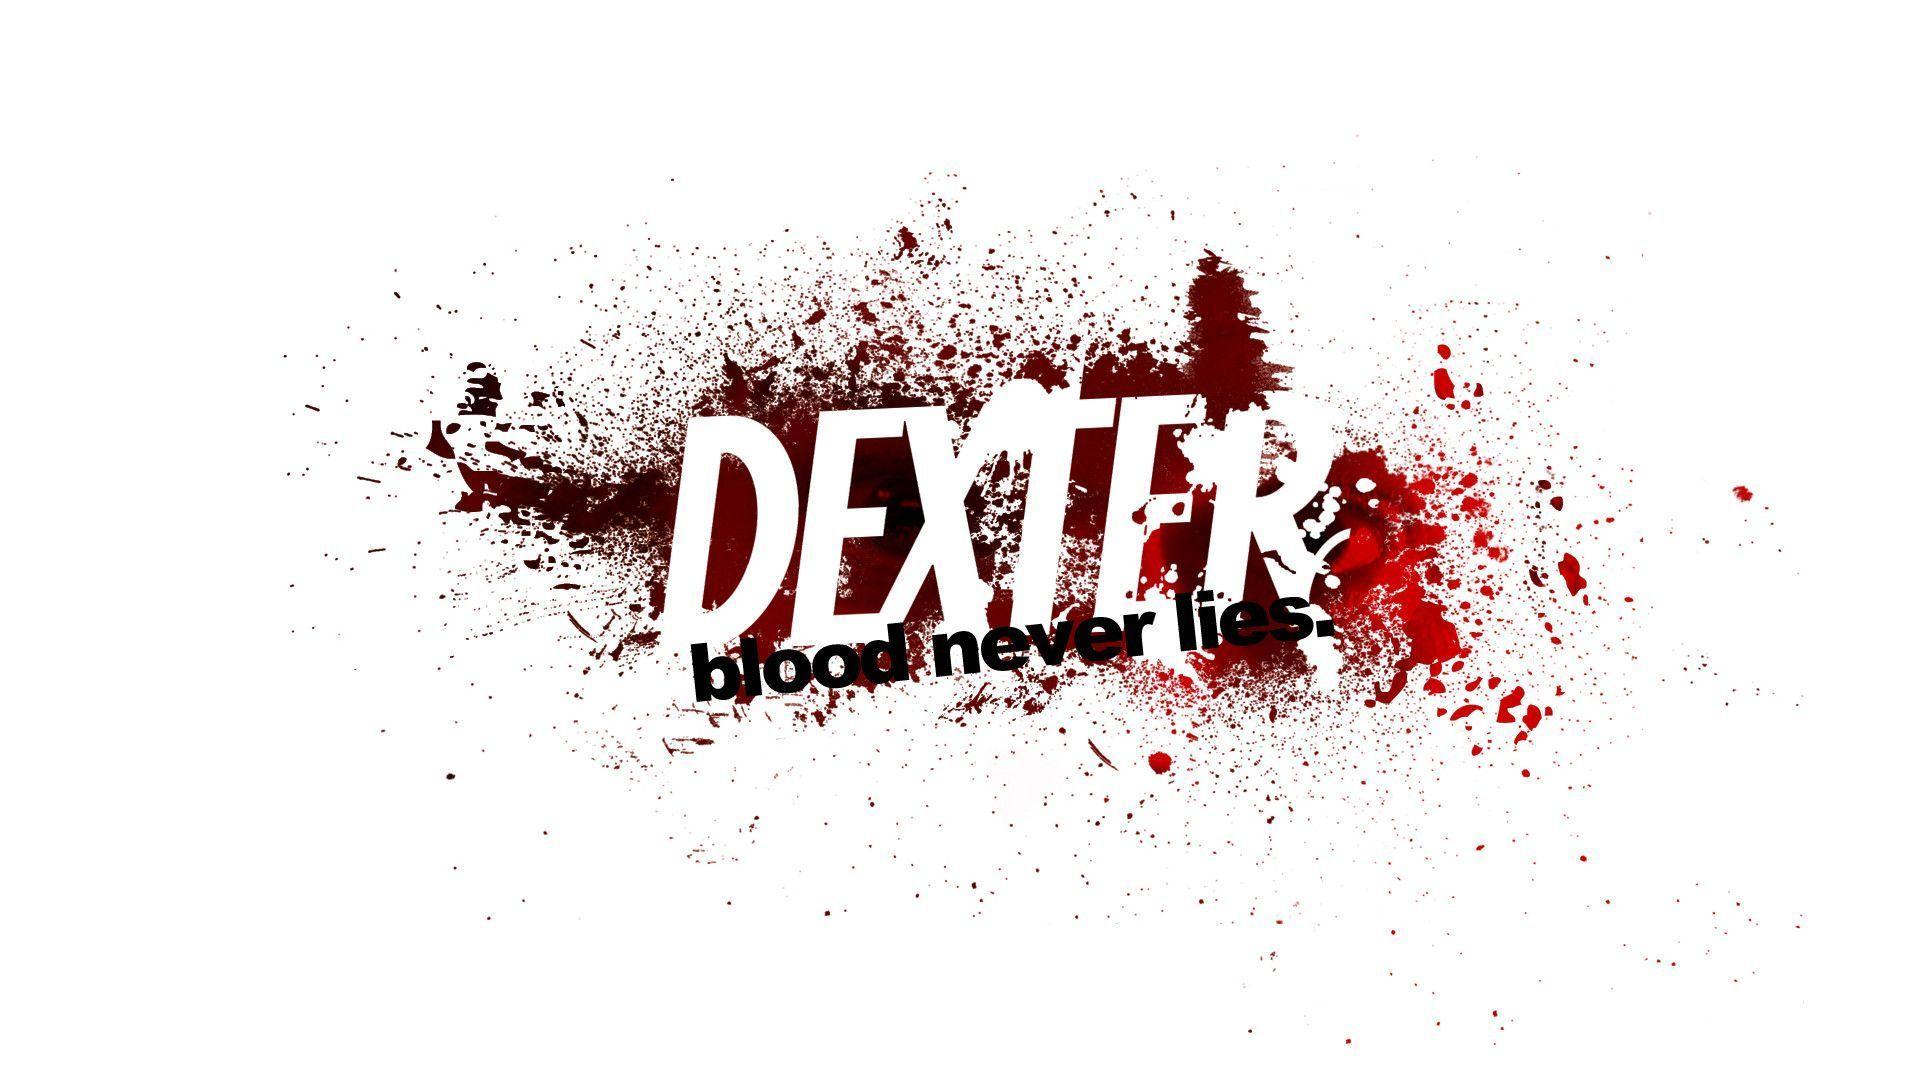 dexter wallpaper 1